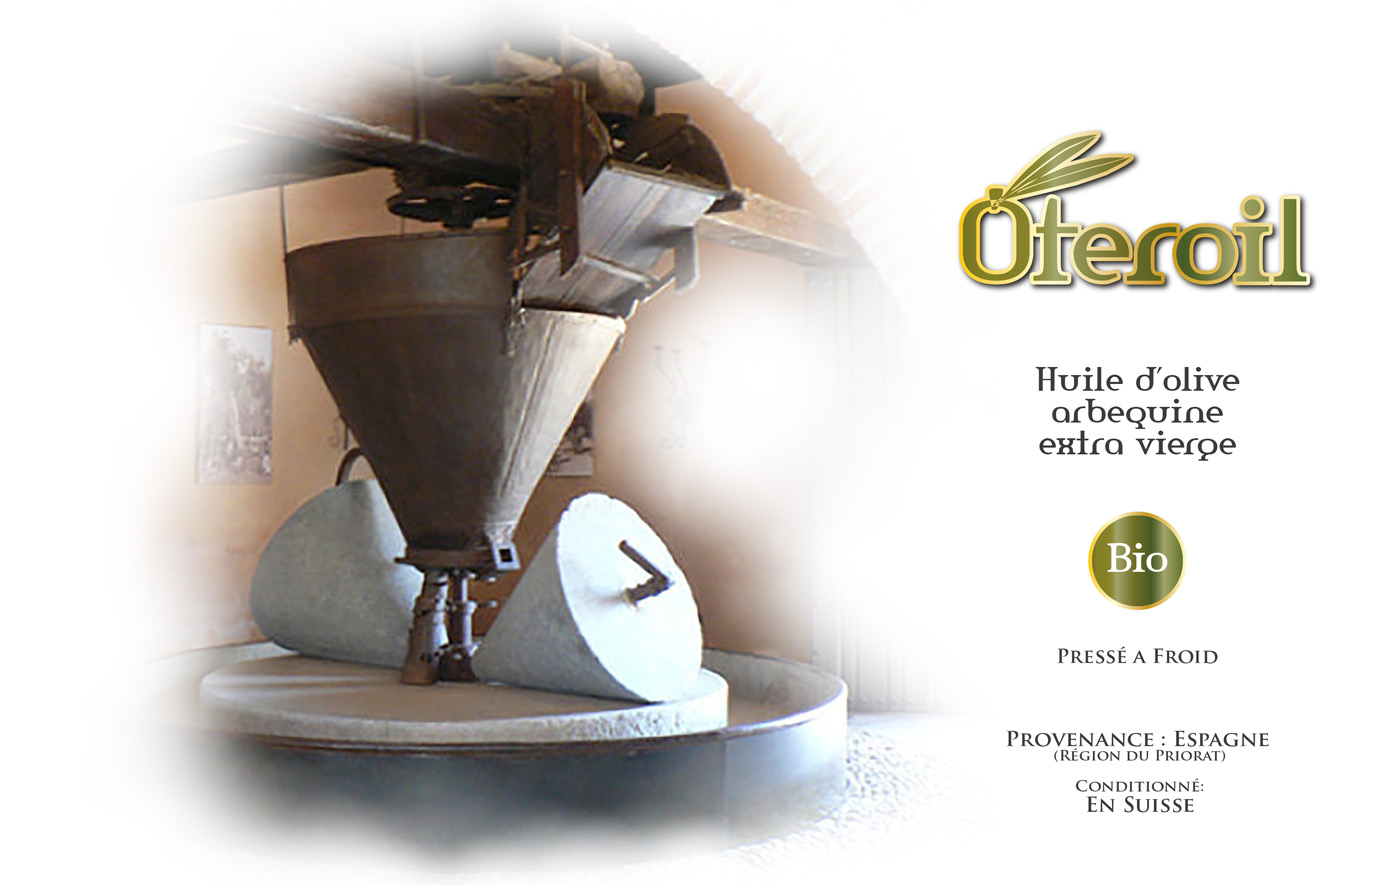 Diseño logo y material corporativo para empresa exportadora de aceite de oliva virgen extra español en Suiza